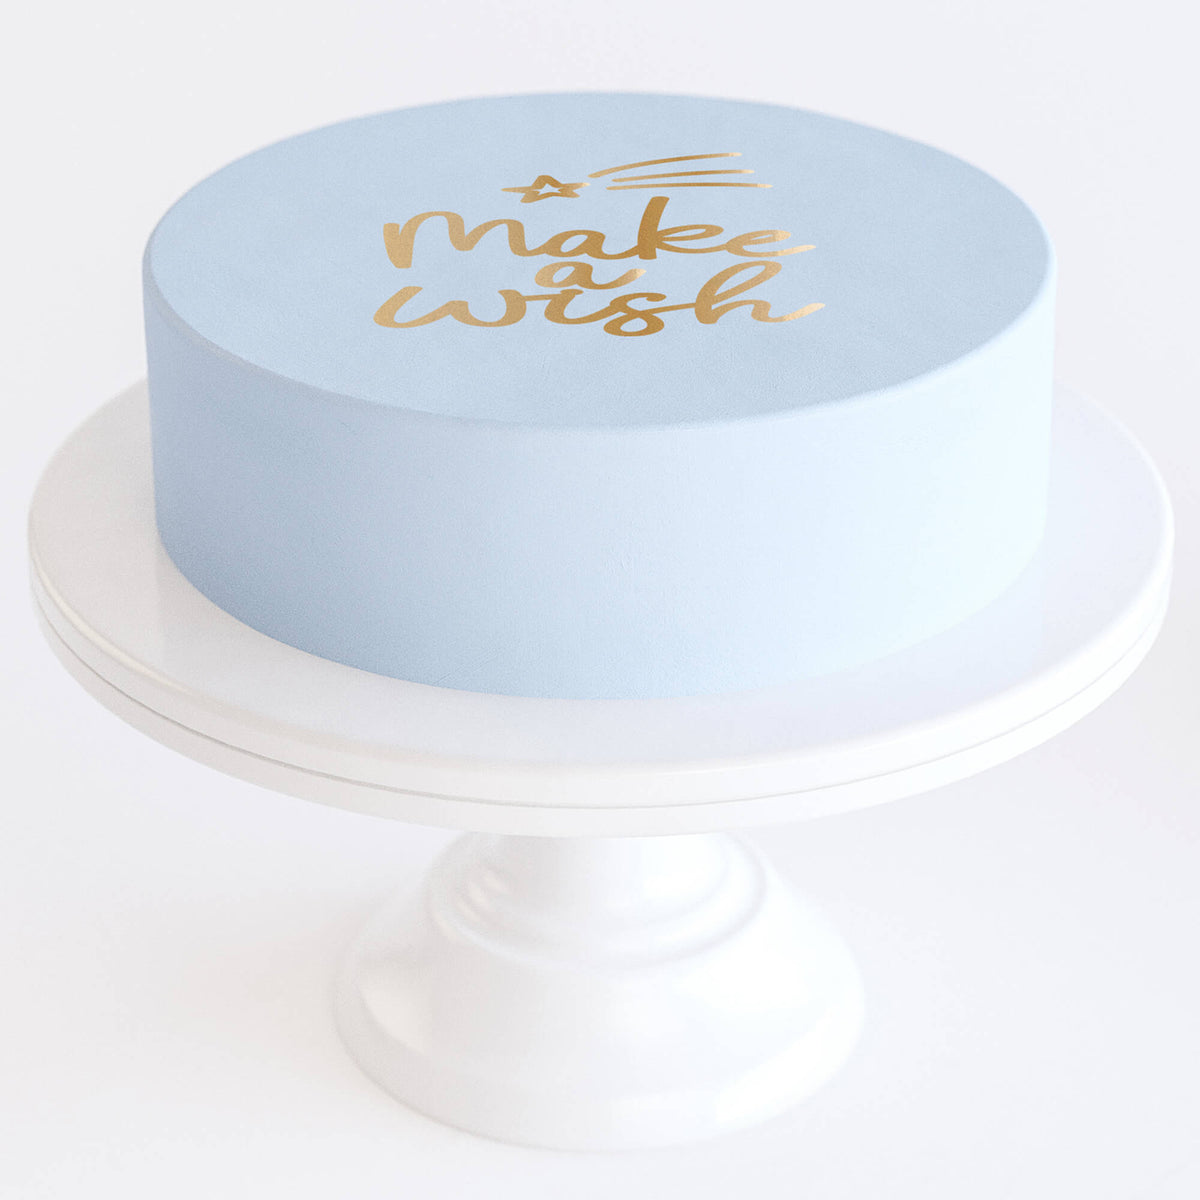 Bolo de aniversário 50 anos azul com cobertura de açúcar e icing – Love In  a Cake